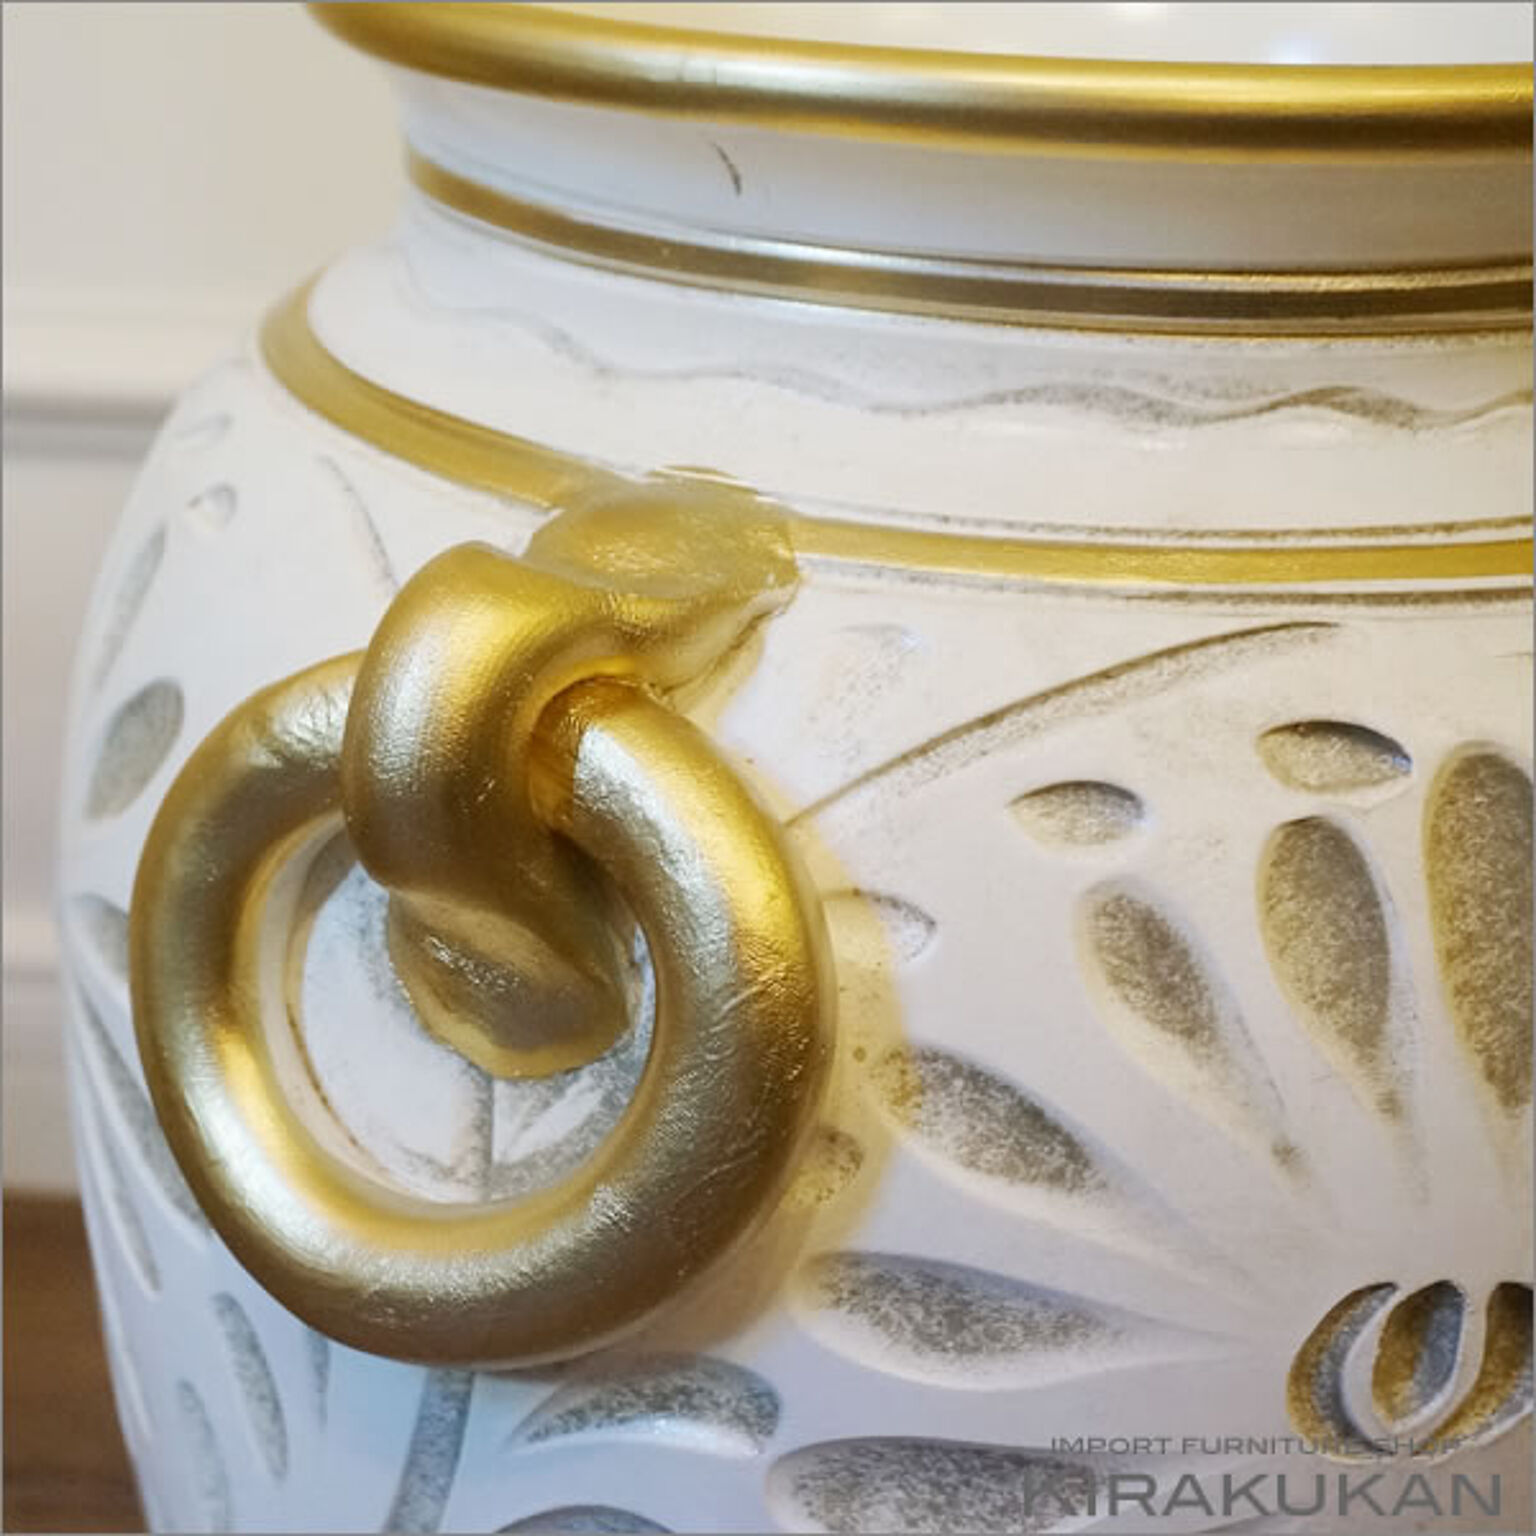 イタリア製 アンブレラスタンド 傘立て 陶器 白 ホワイト 手彩色 壺型 